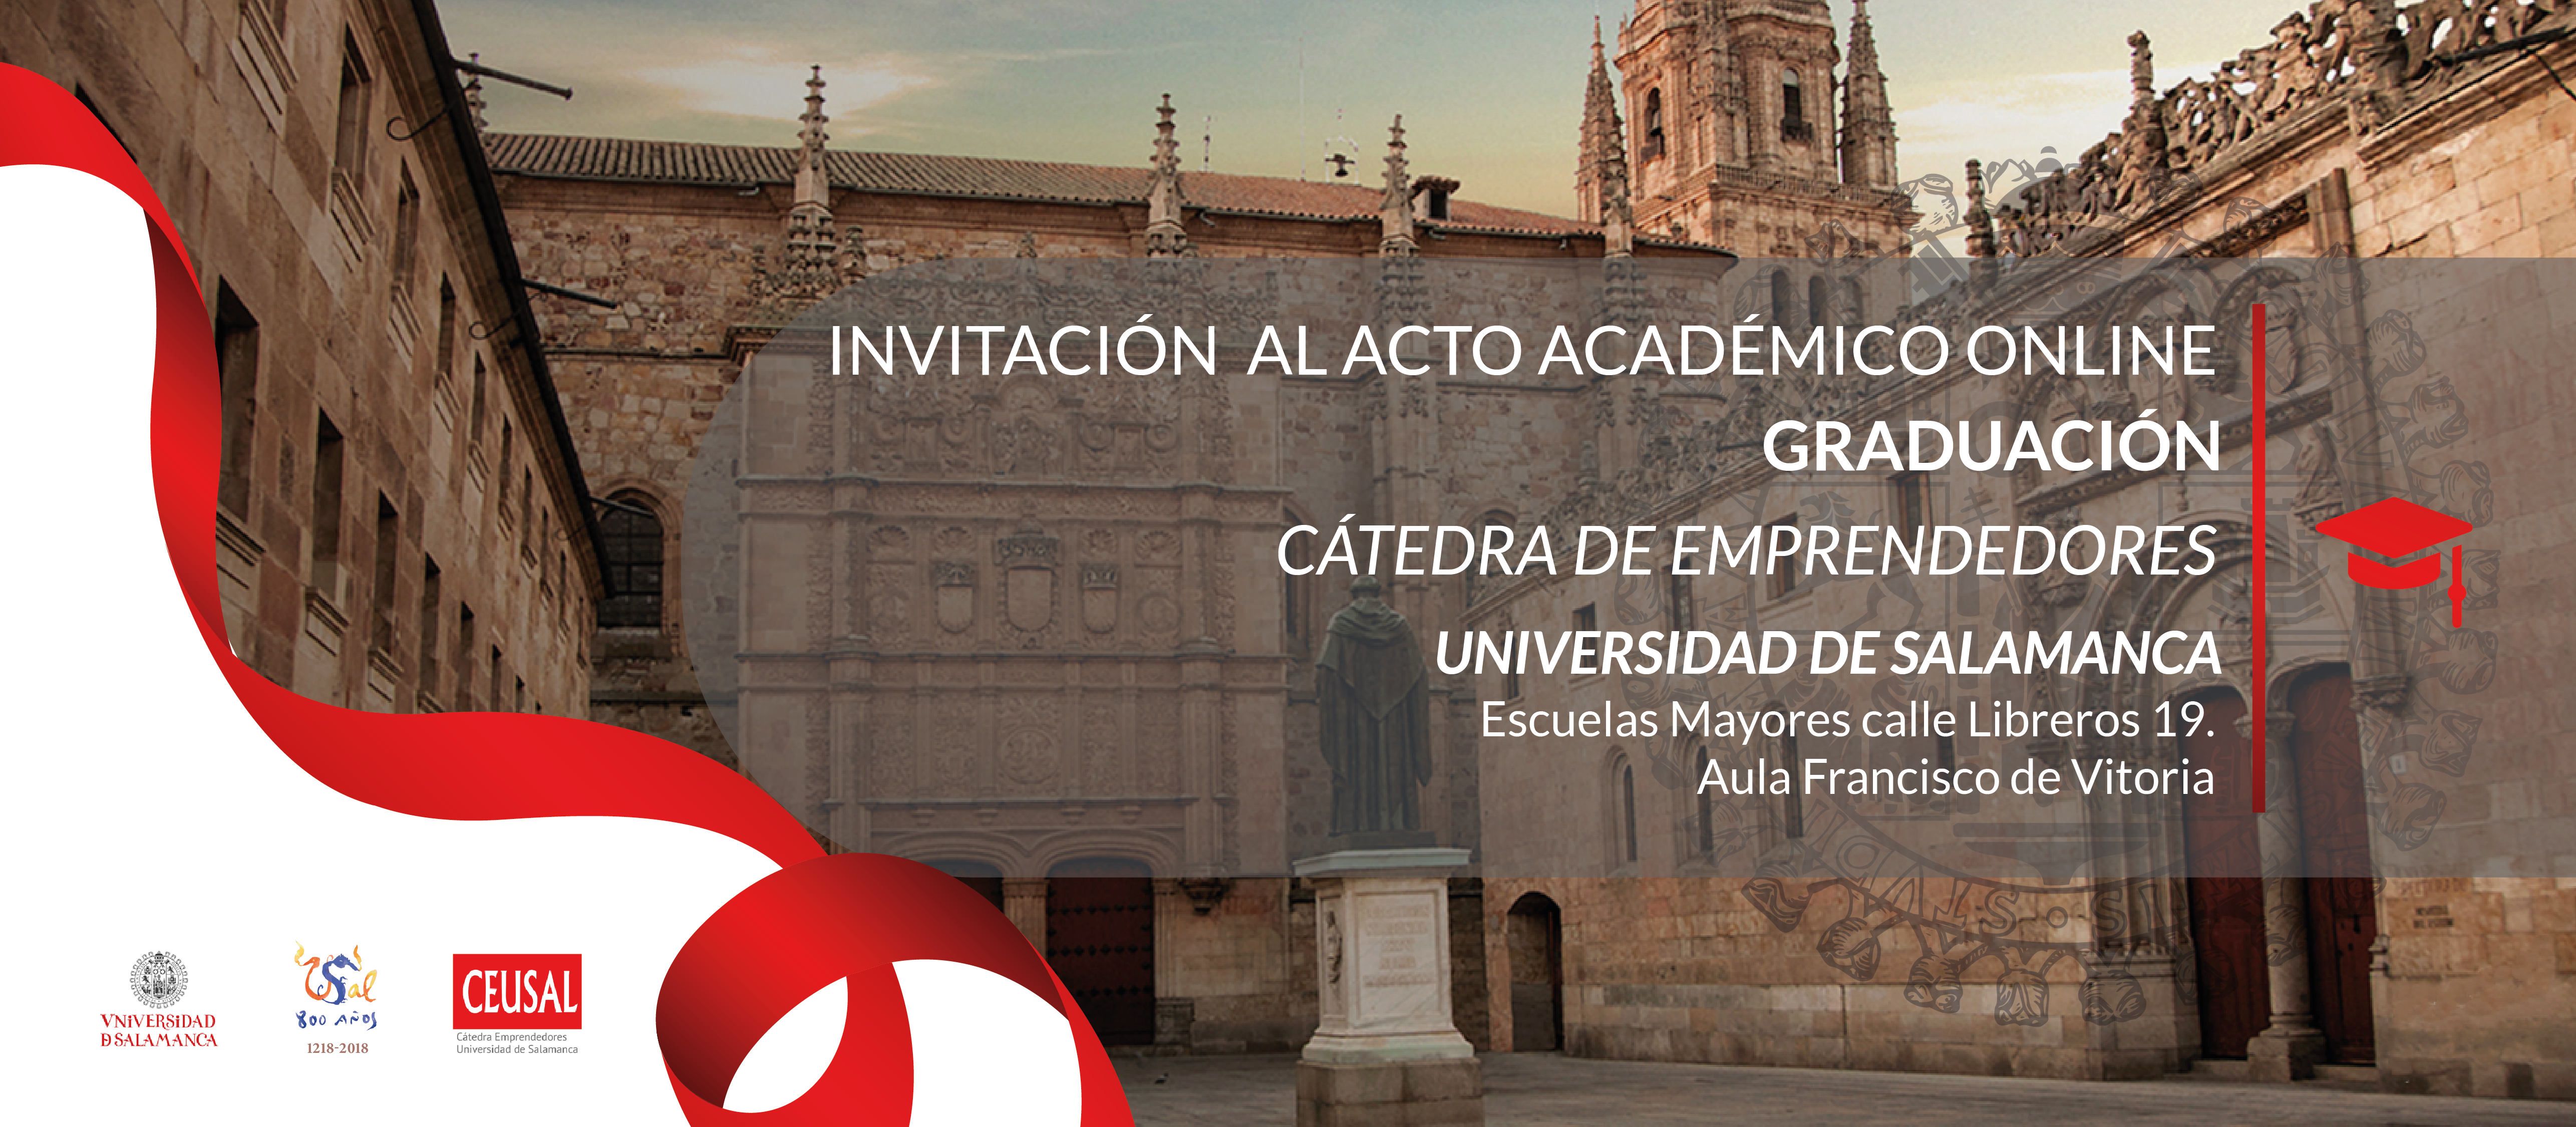 La Cátedra de Emprendedores de la Universidad de Salamanca recibe diez nuevos emprendedores extranjeros egresados del programa de formación en USAL